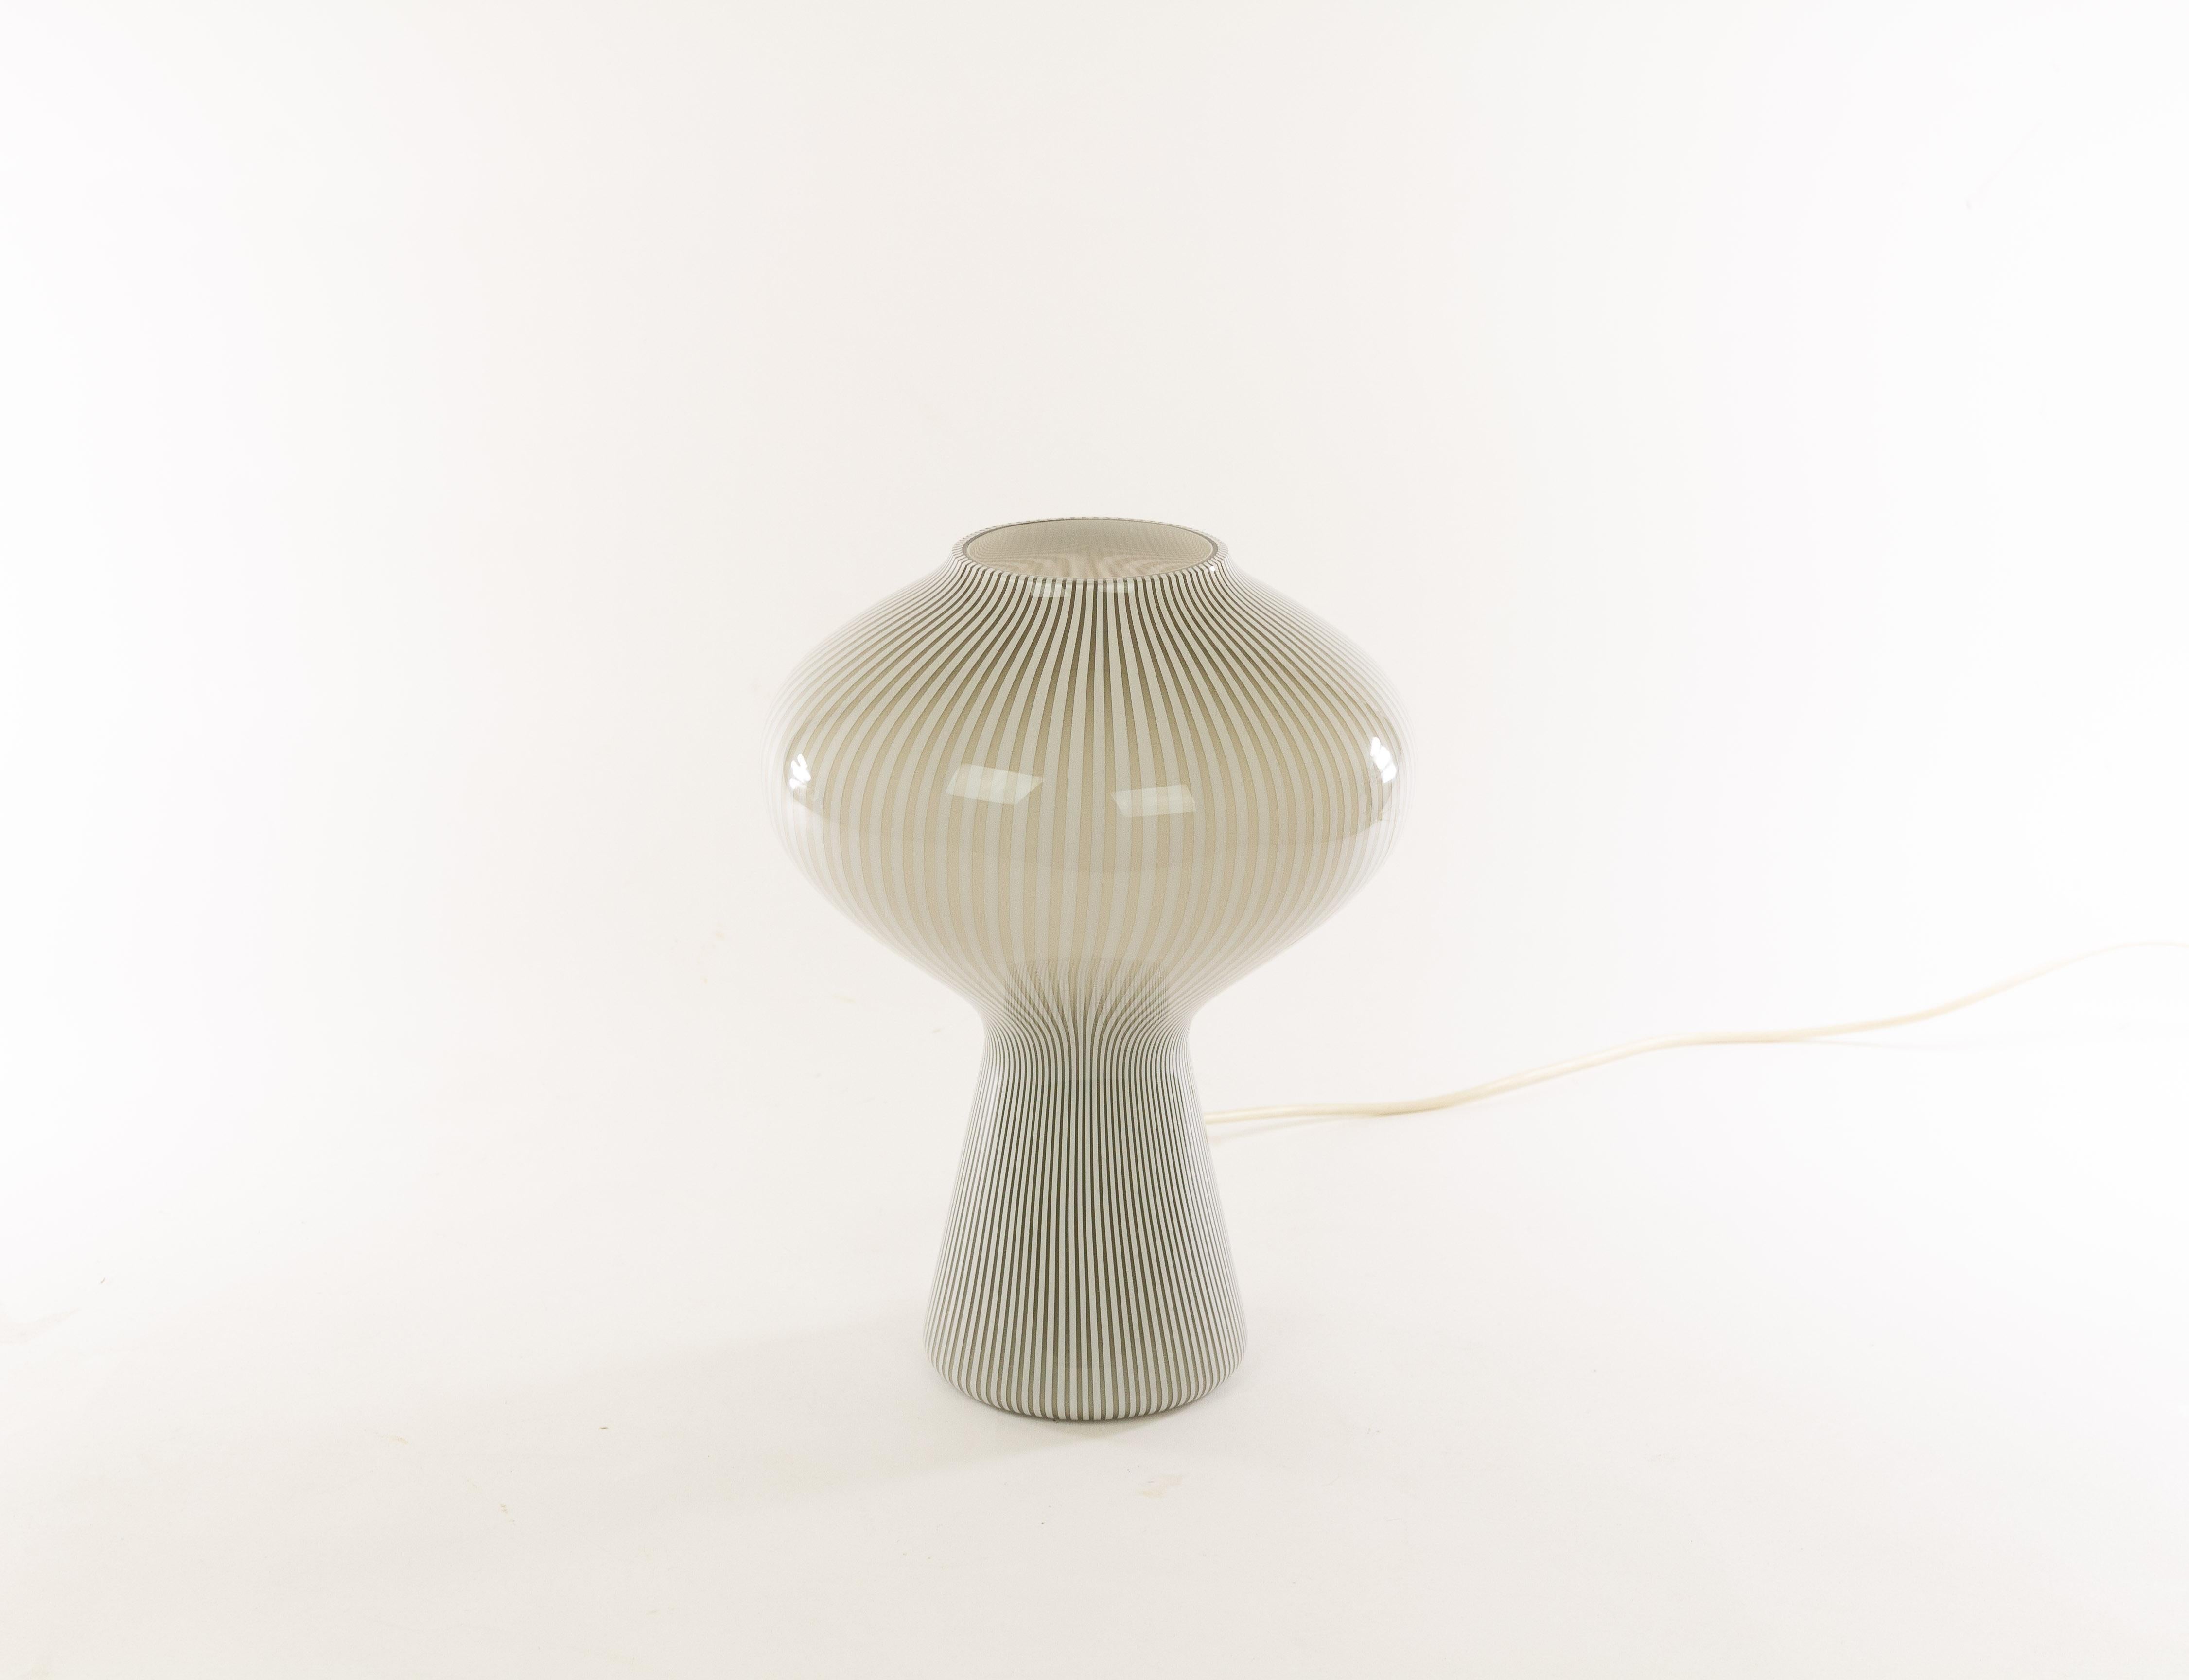 Italian Striped Fungo Table Lamp by Massimo Vignelli for Venini, 1950s